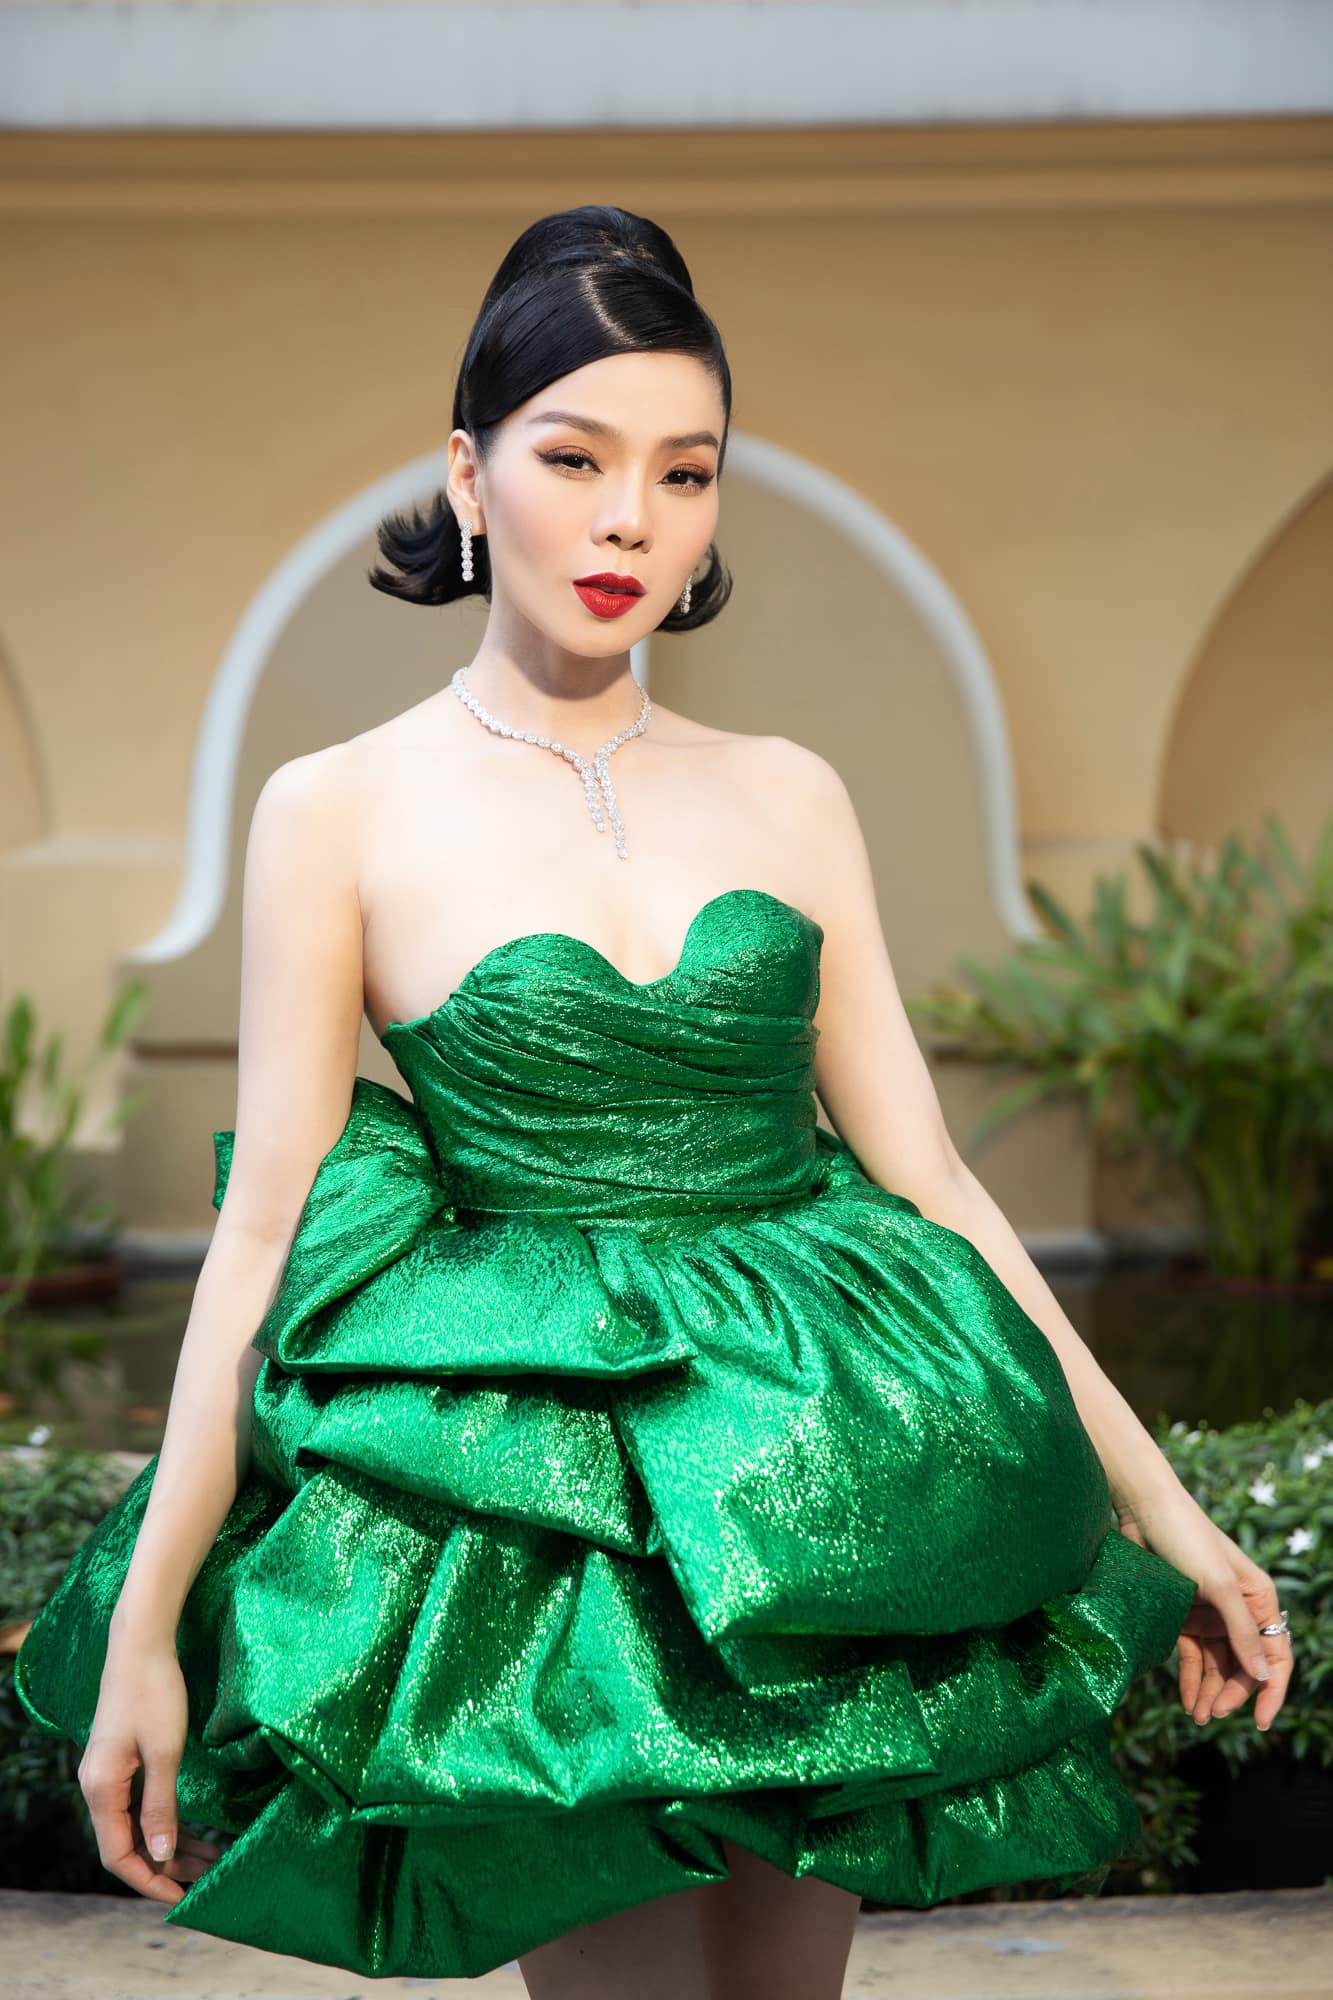 Lệ Quyên gây tranh cãi khi nghề ghế nóng cuộc thi “Miss World Vietnam”